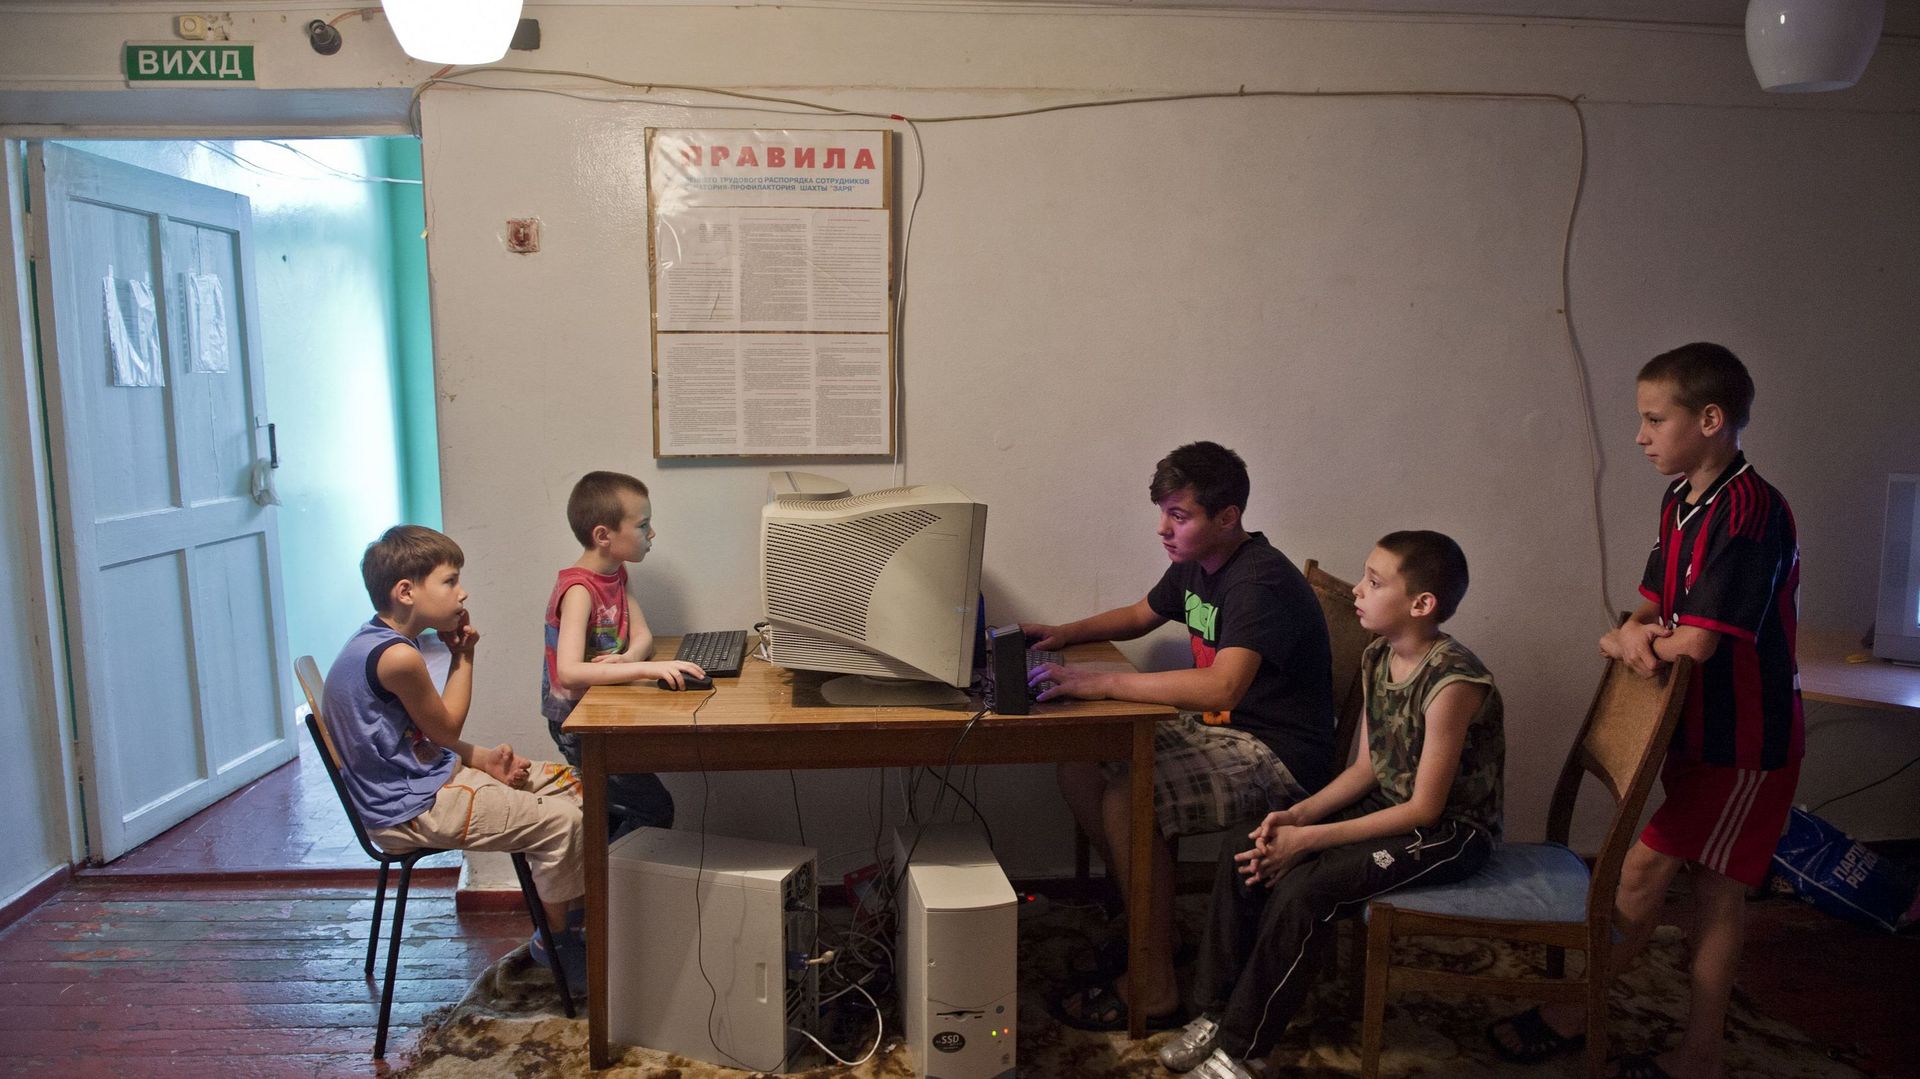 Des sites russes sont bloqués en Ukraine